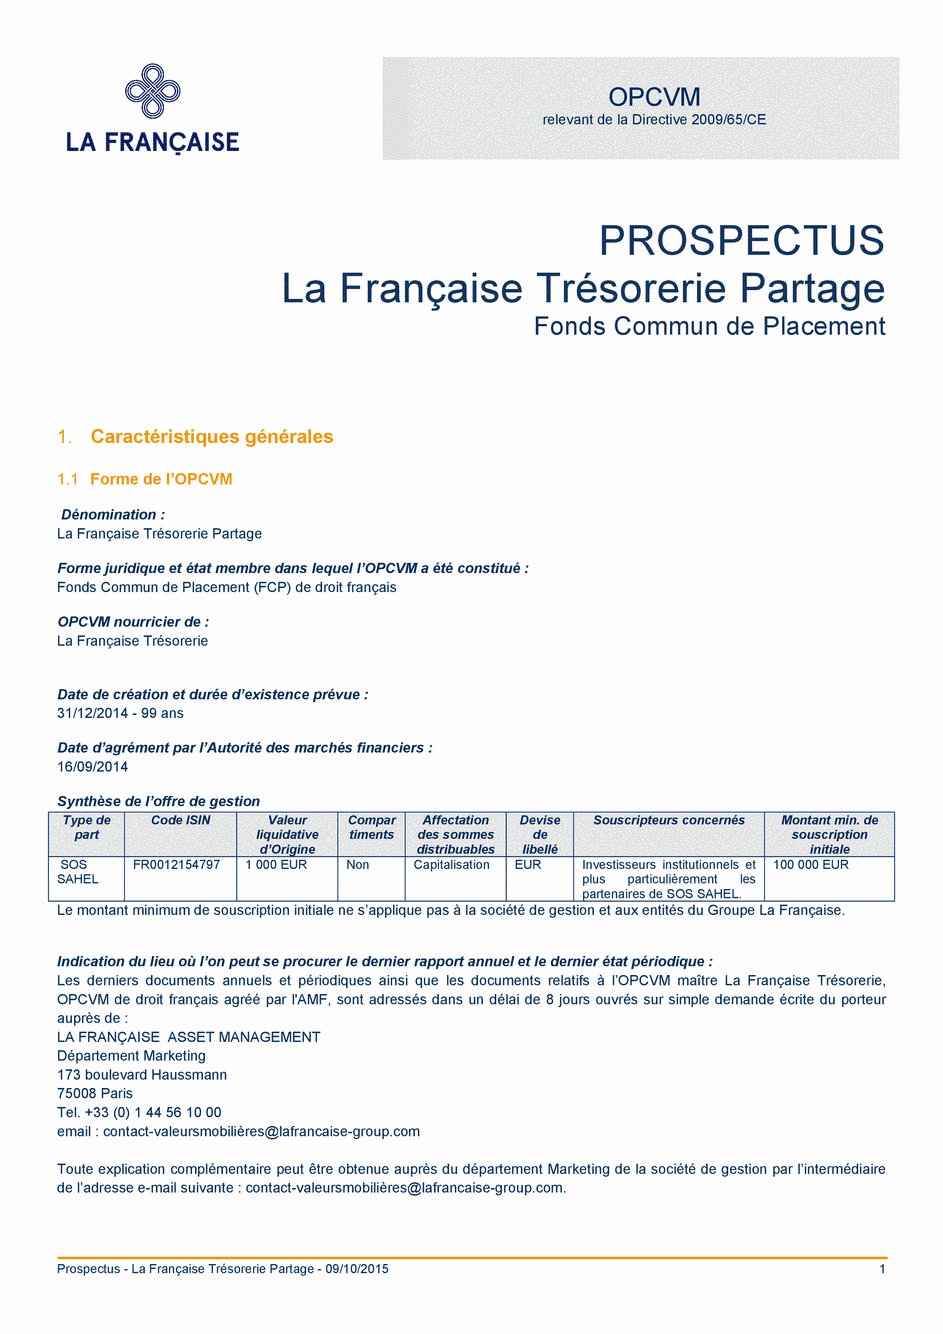 Prospectus La Française Trésorerie Partage - 09/10/2015 - Français